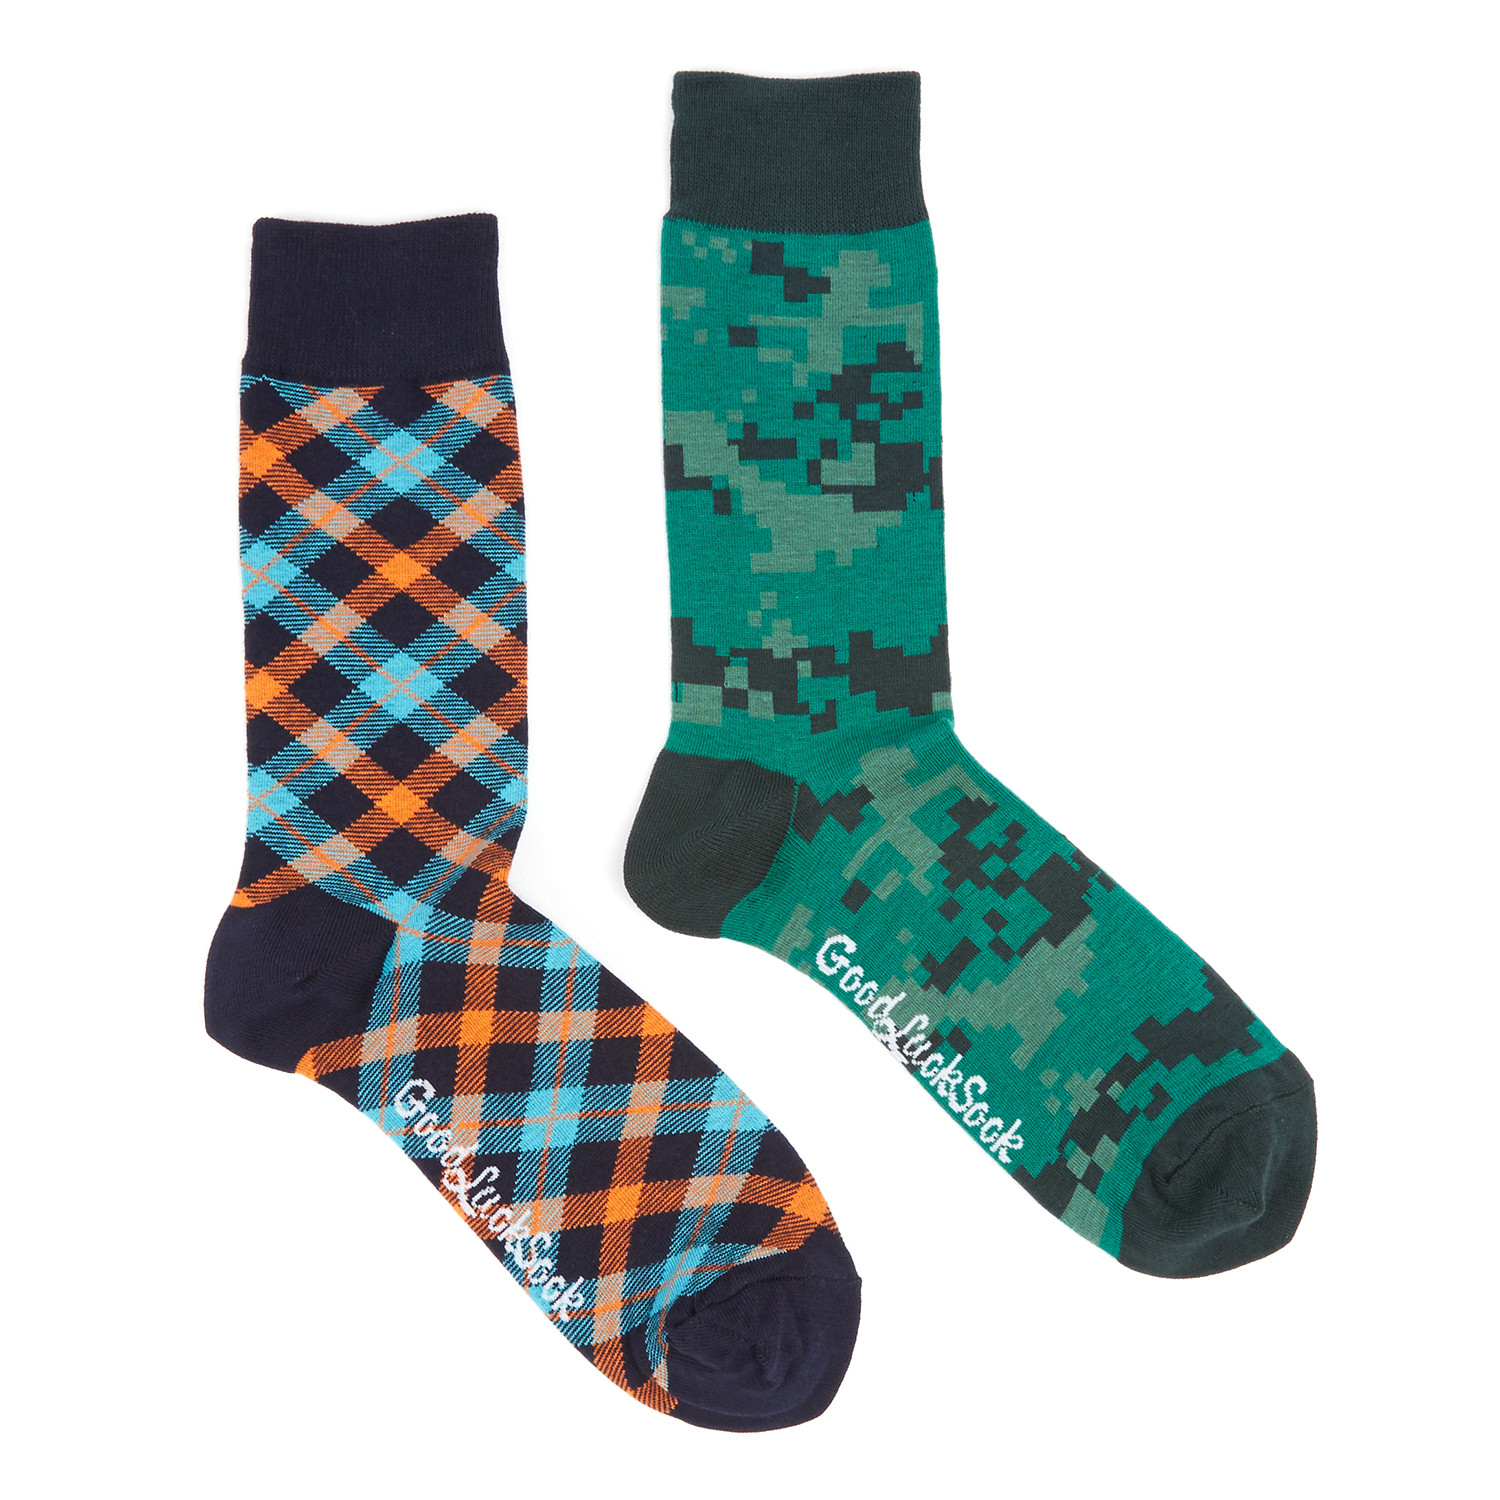 Green Marine Socks // Pack of 2 - Good Luck Sock - Touch of Modern